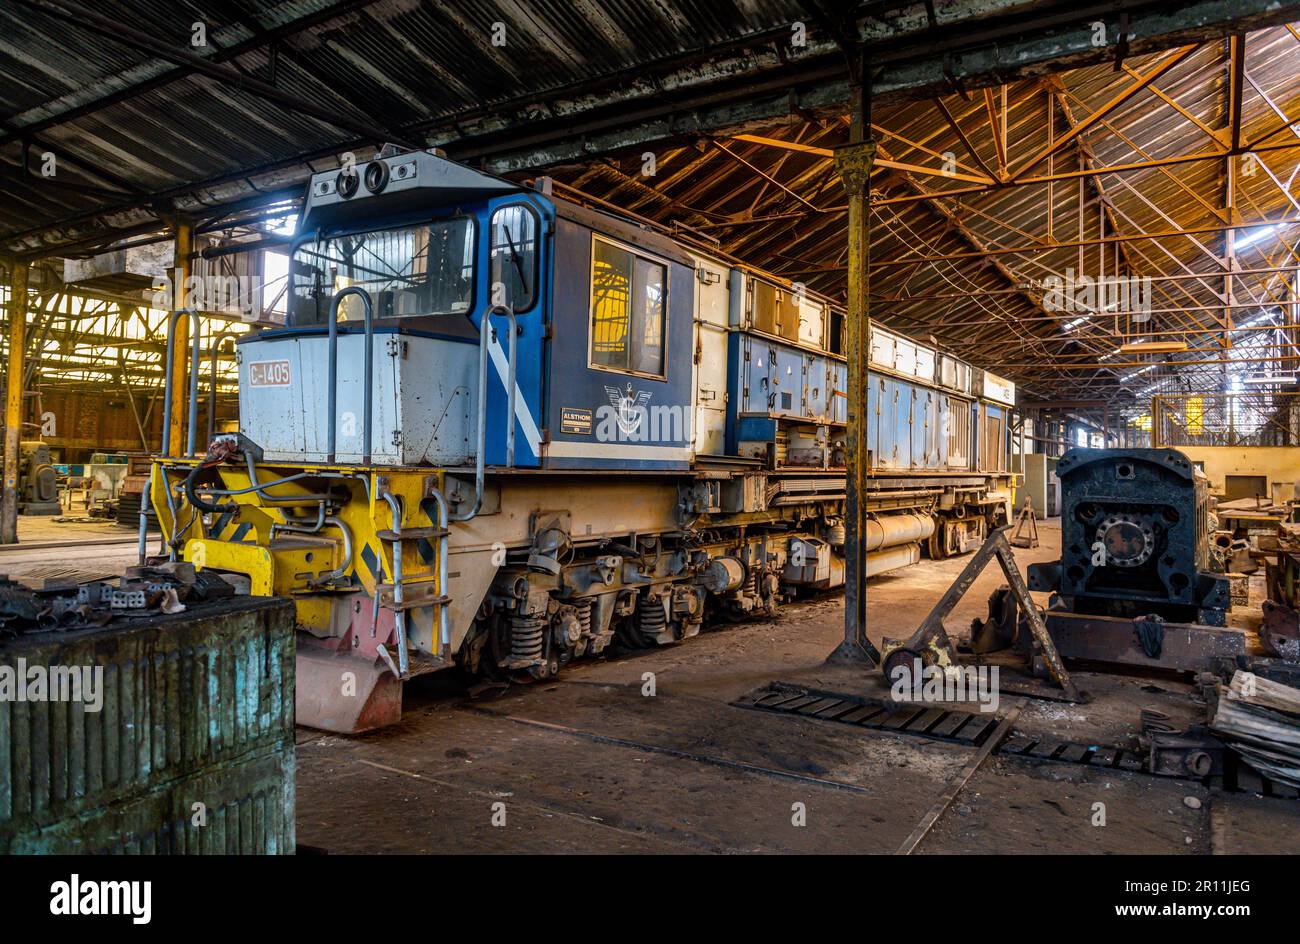 Ancien train dans le dépôt ferroviaire de Mbanza Ngungu, RD Congo Banque D'Images